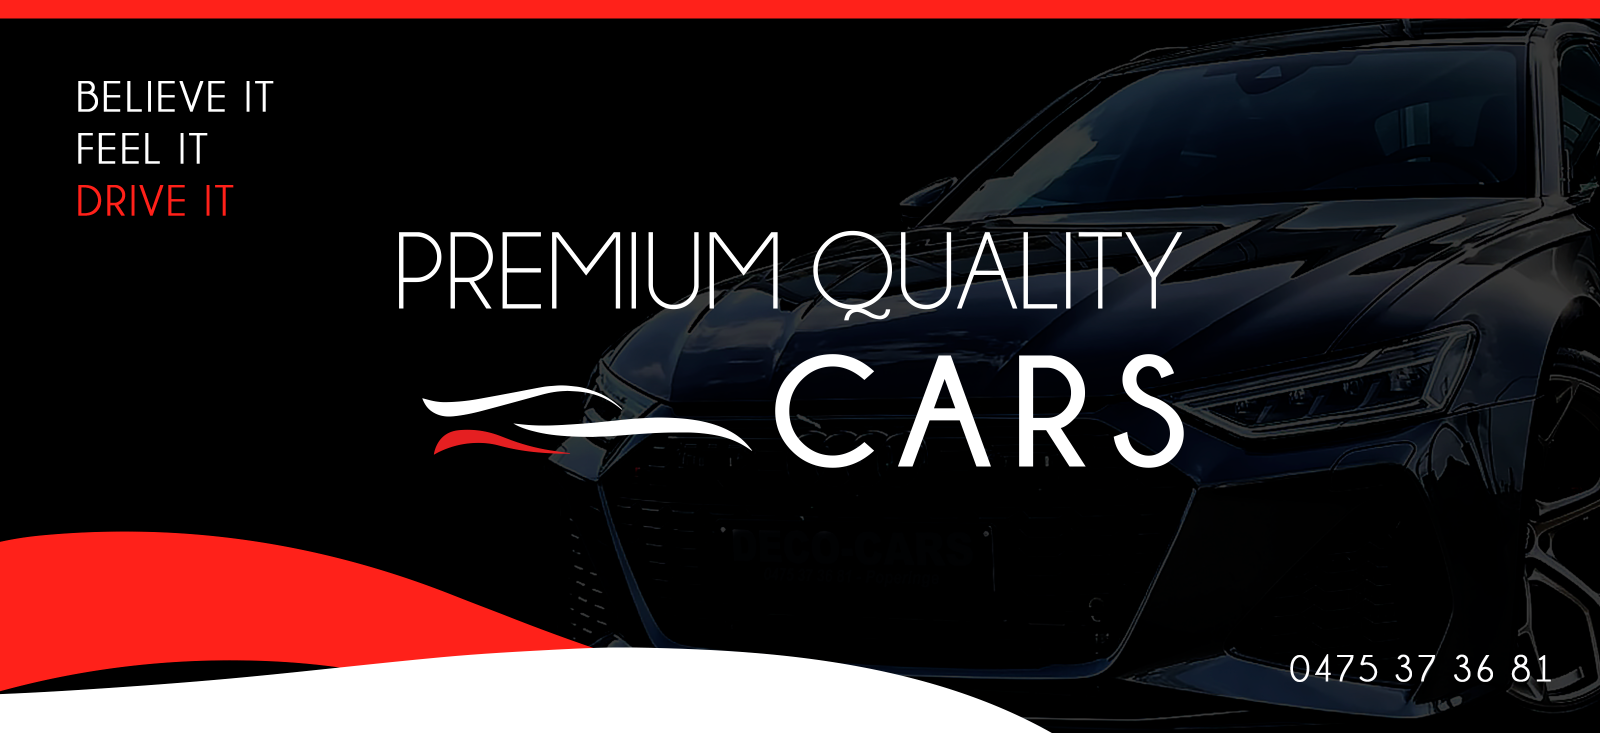 Welkom bij Premium Quality Cars Poperinge, uw toonaangevende specialist in jonge demo en tweedehands voertuigen. Met meer dan 20 jaar ervaring in de branche staan wij garant voor een uitgebreid assortiment aan hoogwaardige auto's, zowel nieuw als tweedehands.  Ons uitgebreid assortiment aan voertuigen, variërend van betrouwbare tweedehands auto's tot prachtige demo / premium kwaliteitswagens, waarbij wij streven naar absolute klanttevredenheid. Bij Premium Quality Cars geniet u niet alleen van een uitgebrei